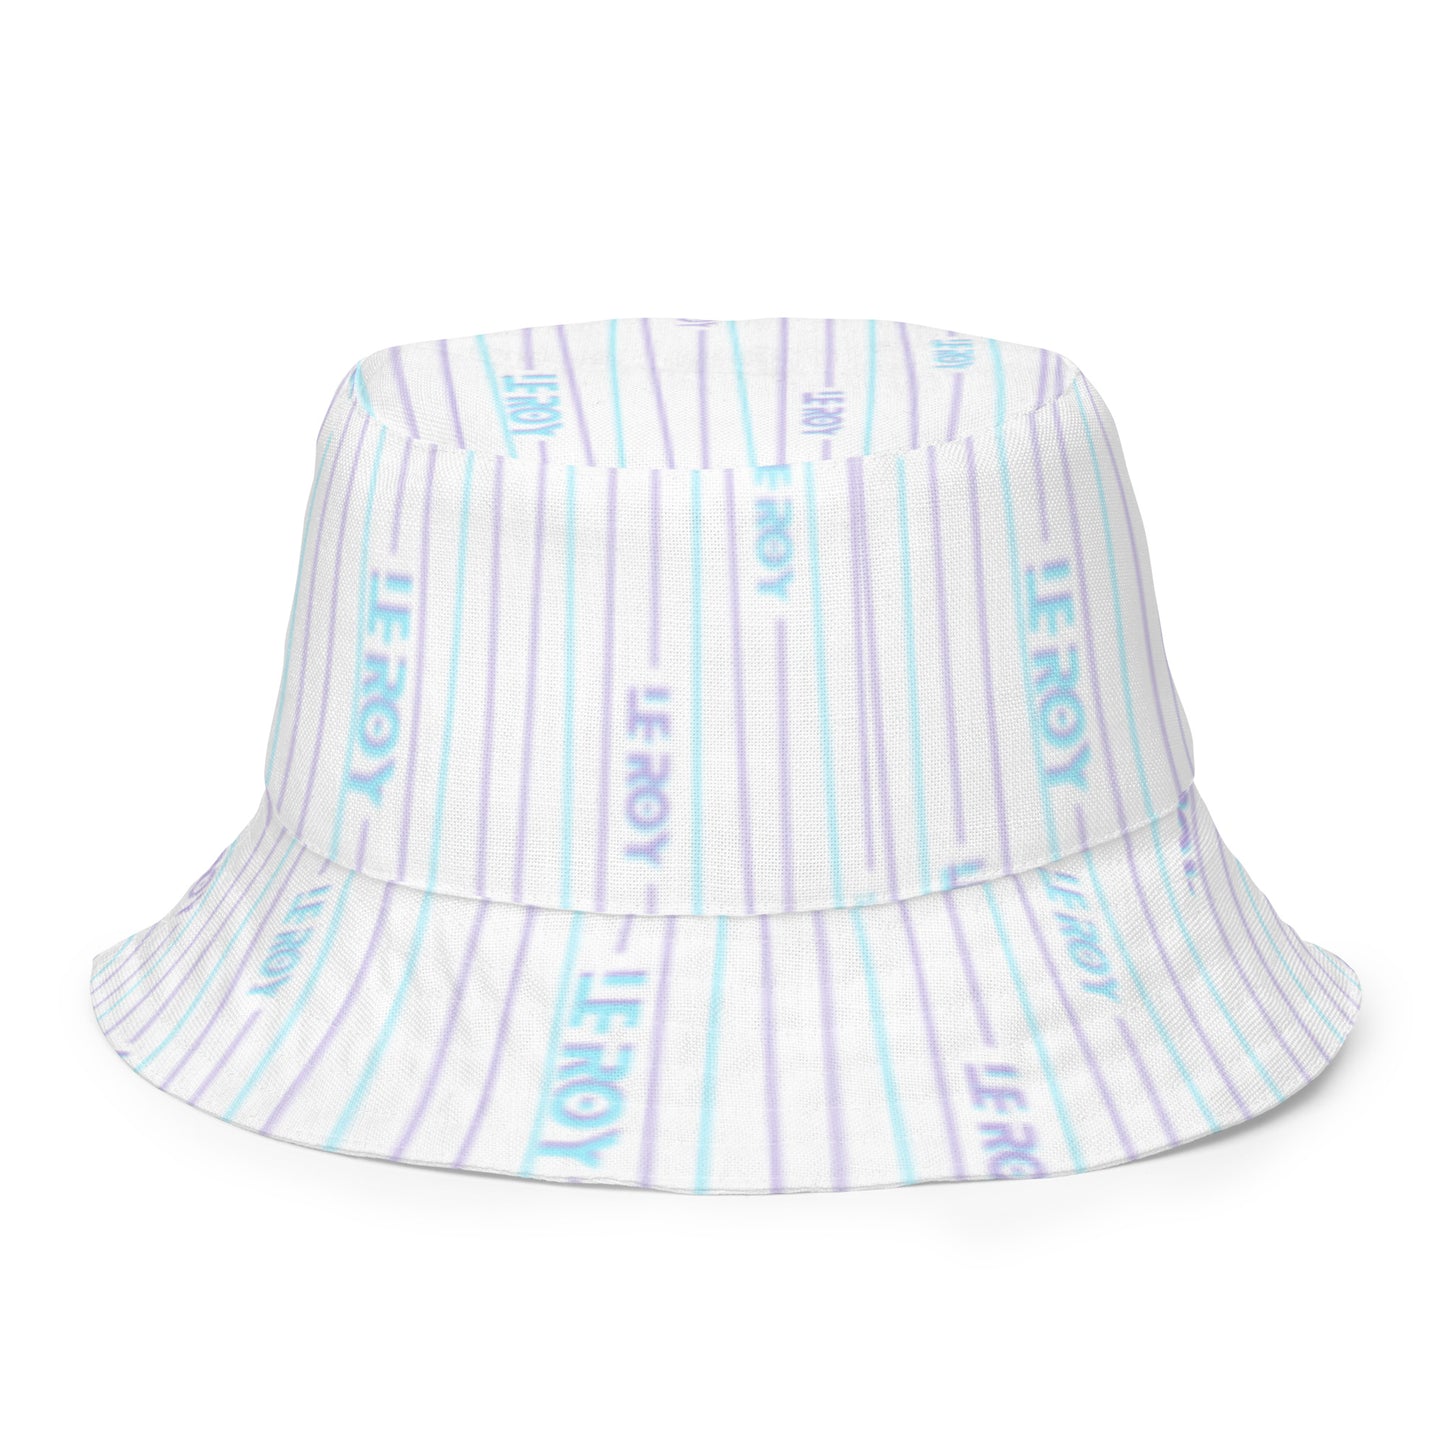 NEO-Drip RV bucket hat